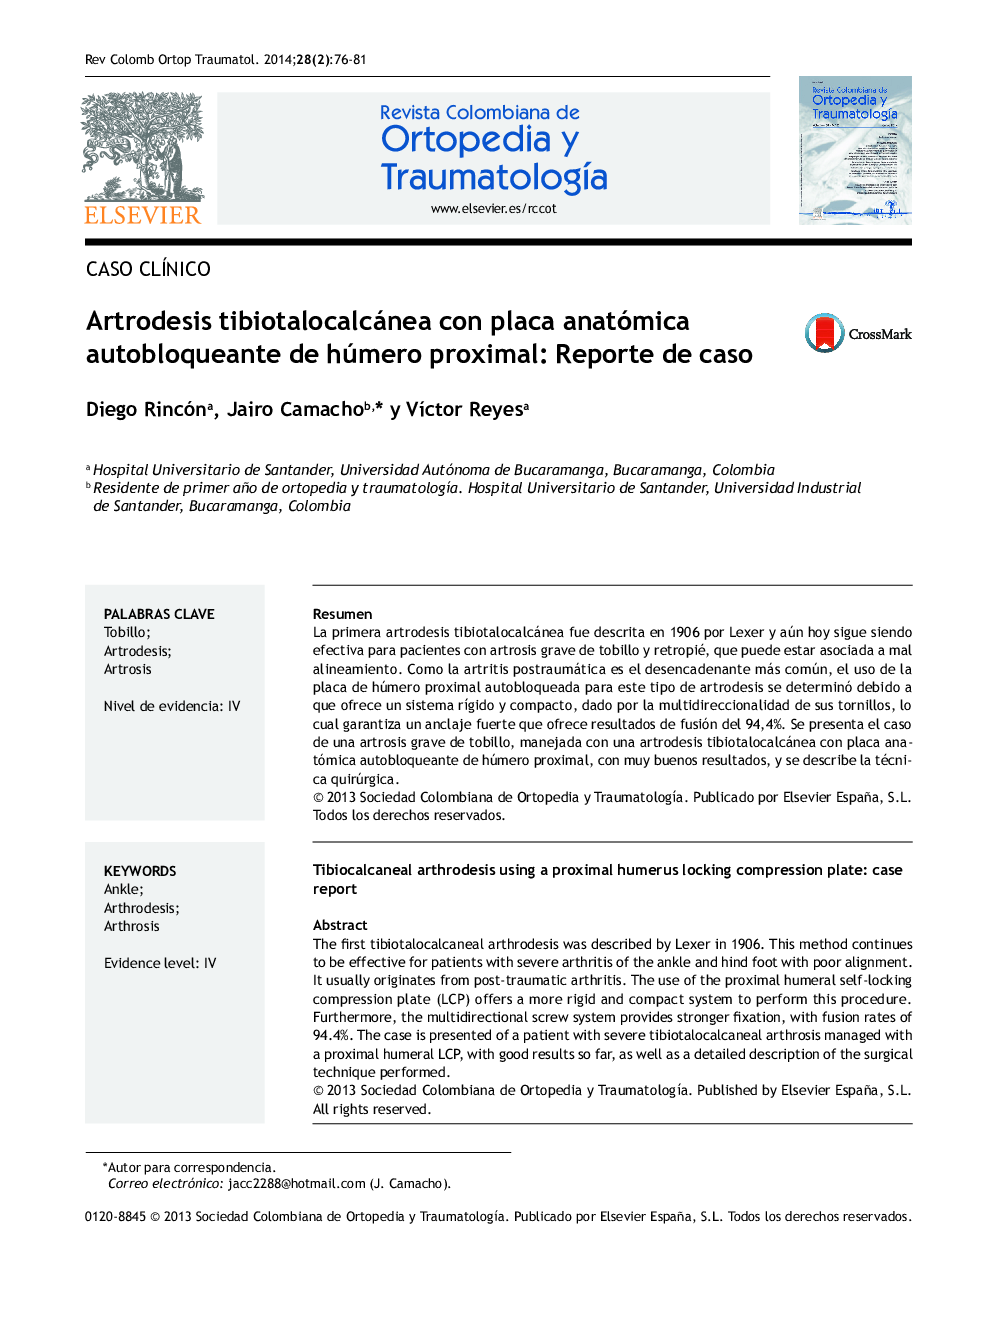 Artrodesis tibiotalocalcánea con placa anatómica autobloqueante de húmero proximal: Reporte de caso